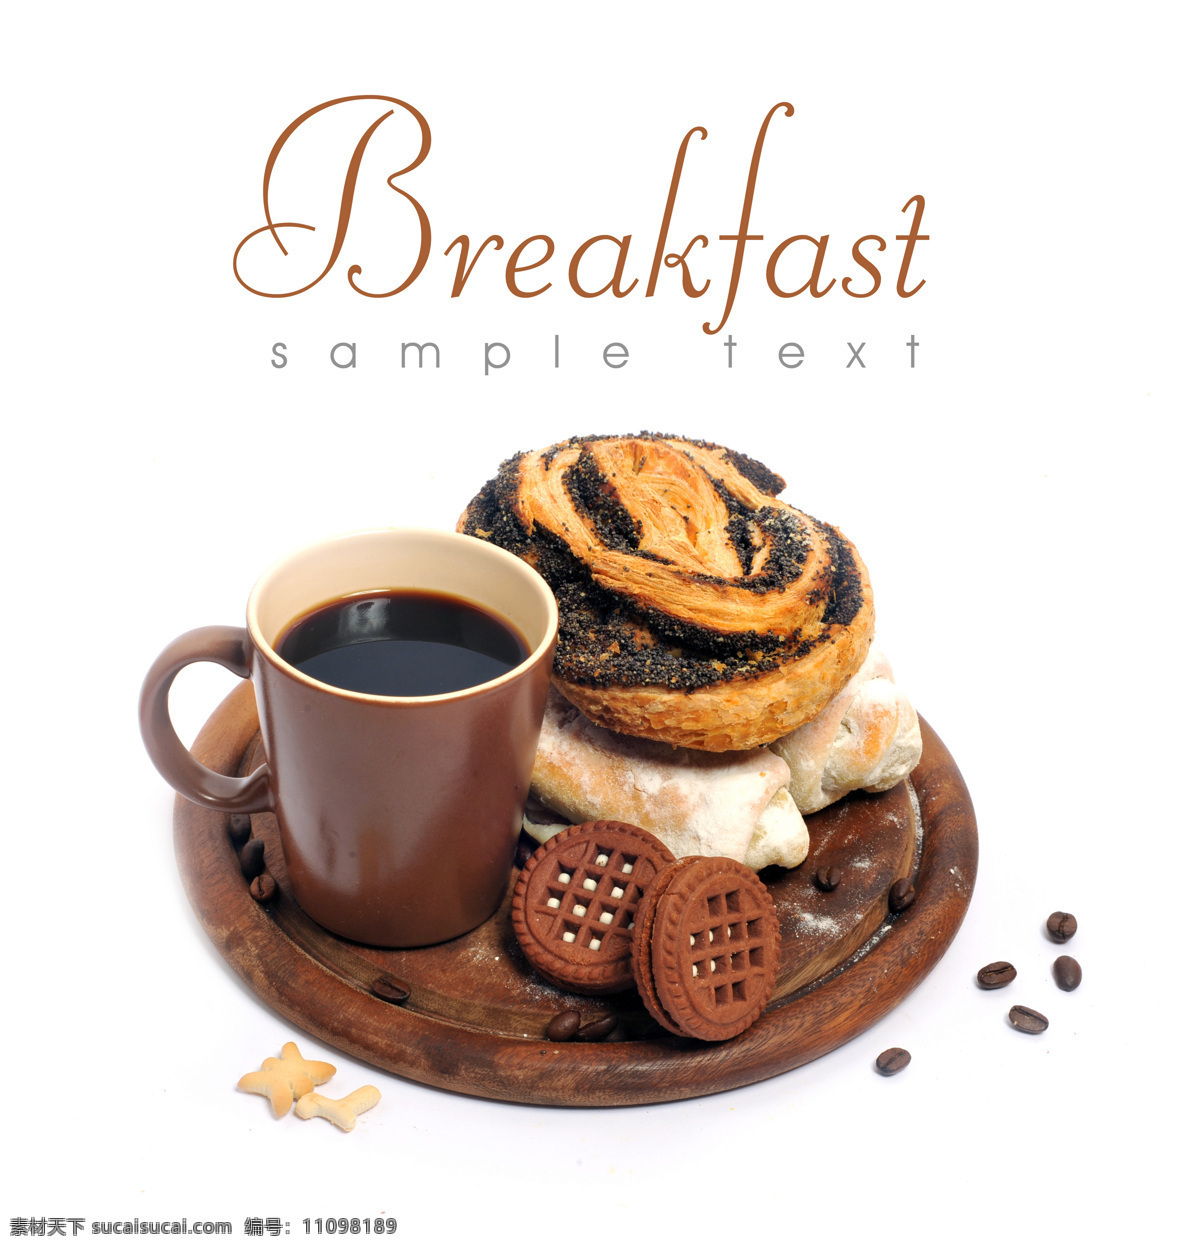 早餐 早点 西式早餐 咖啡 面包 曲奇饼 咖啡豆 糖甜甜圈 高清图片 食物写真 写真 餐饮美食 西餐美食